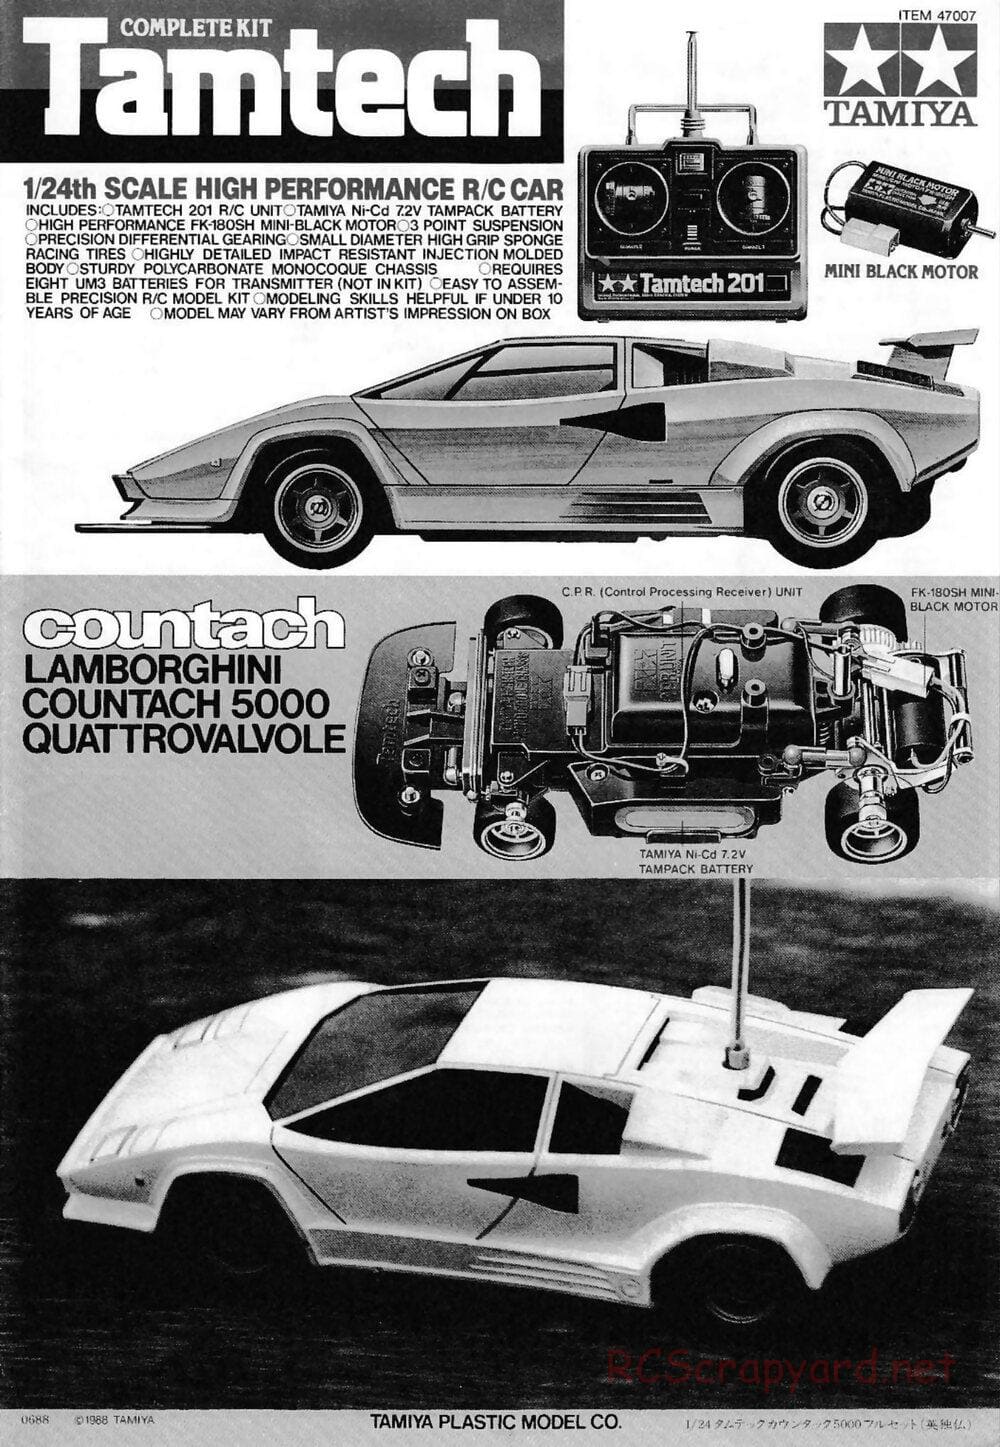 Tamiya - Tamtech - Lamborghini Countach 5000 Chassis - Manual - Page 1